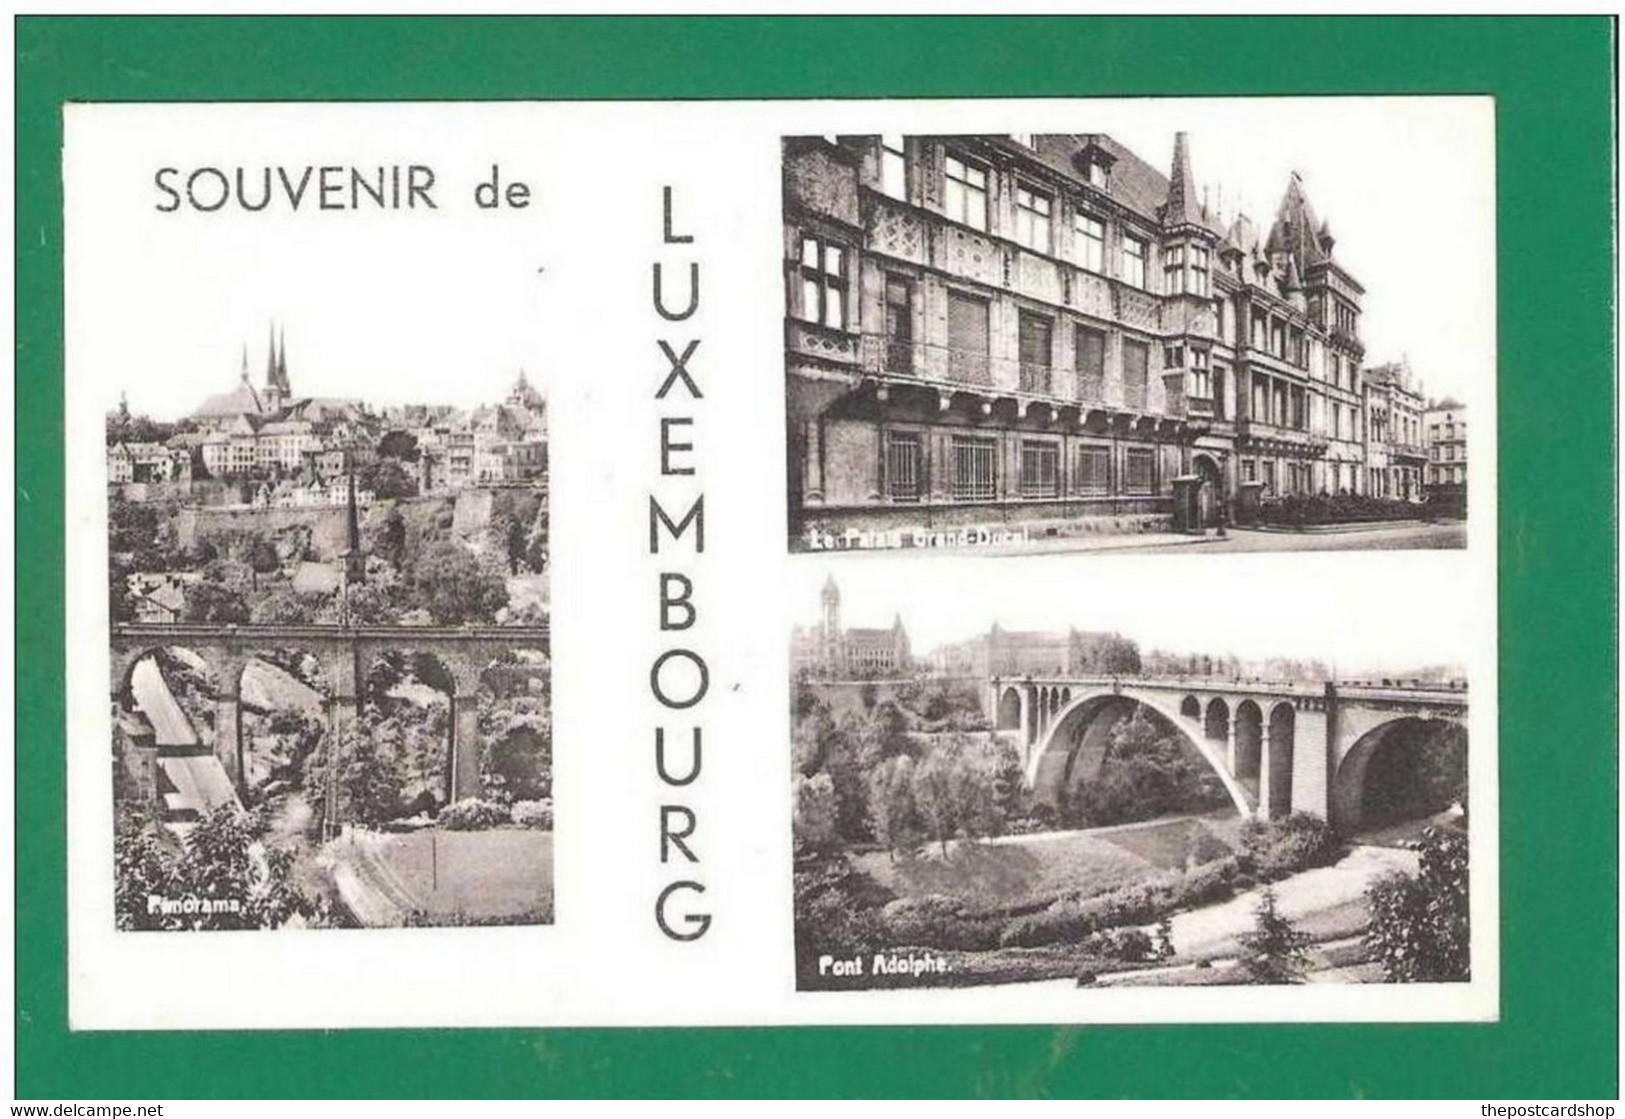 SOUVENIR DE LUXEMBOURG MULTIVIEW - Luxemburgo - Ciudad